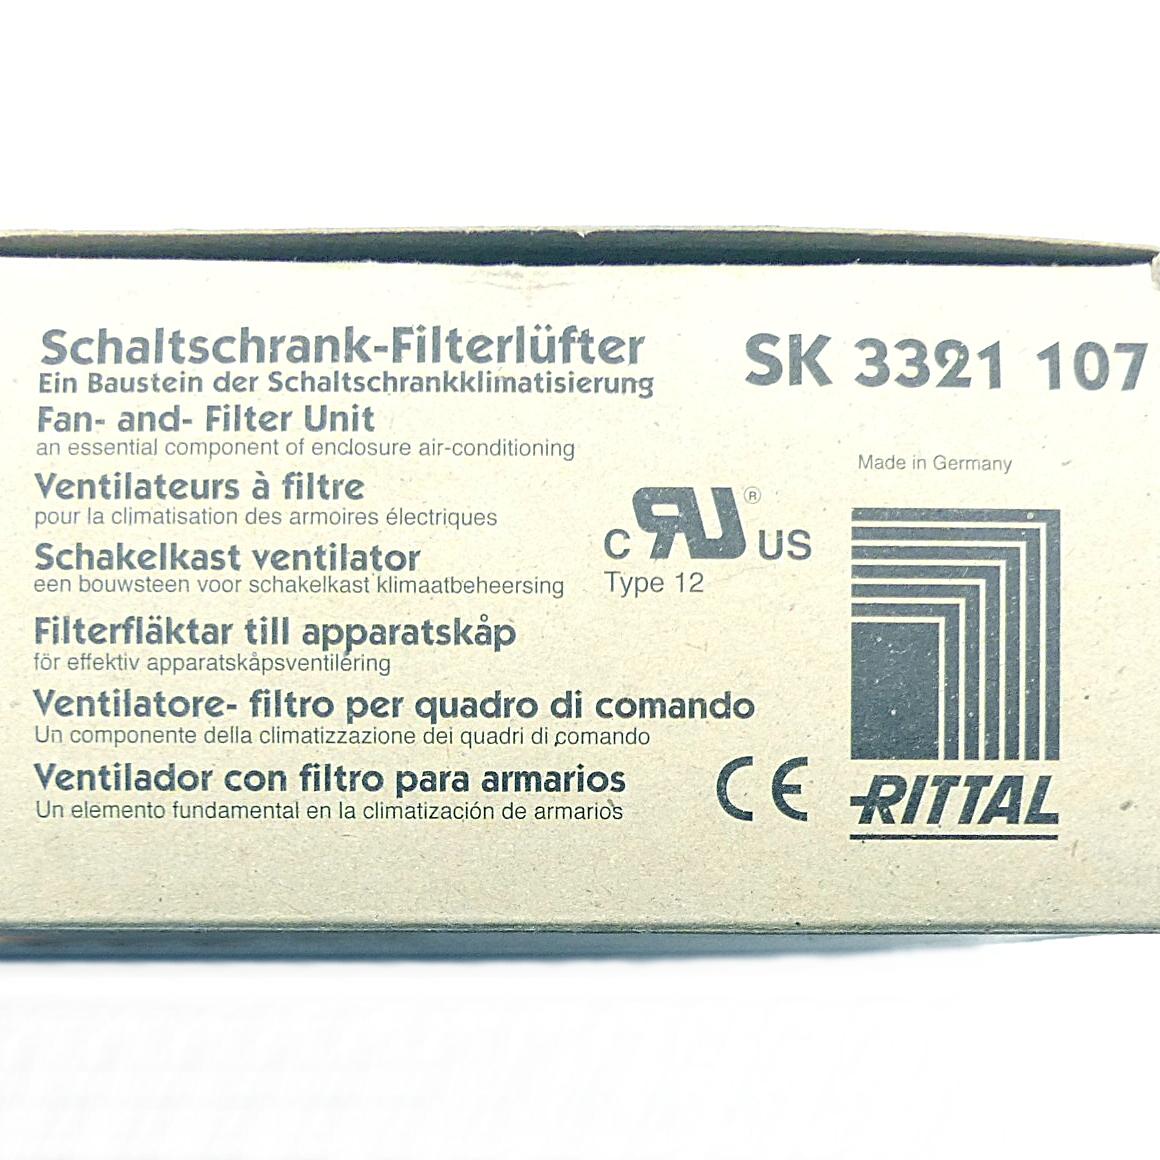 Produktfoto 2 von RITTAL Schaltschrank-Filterlüfter SK 3321 107